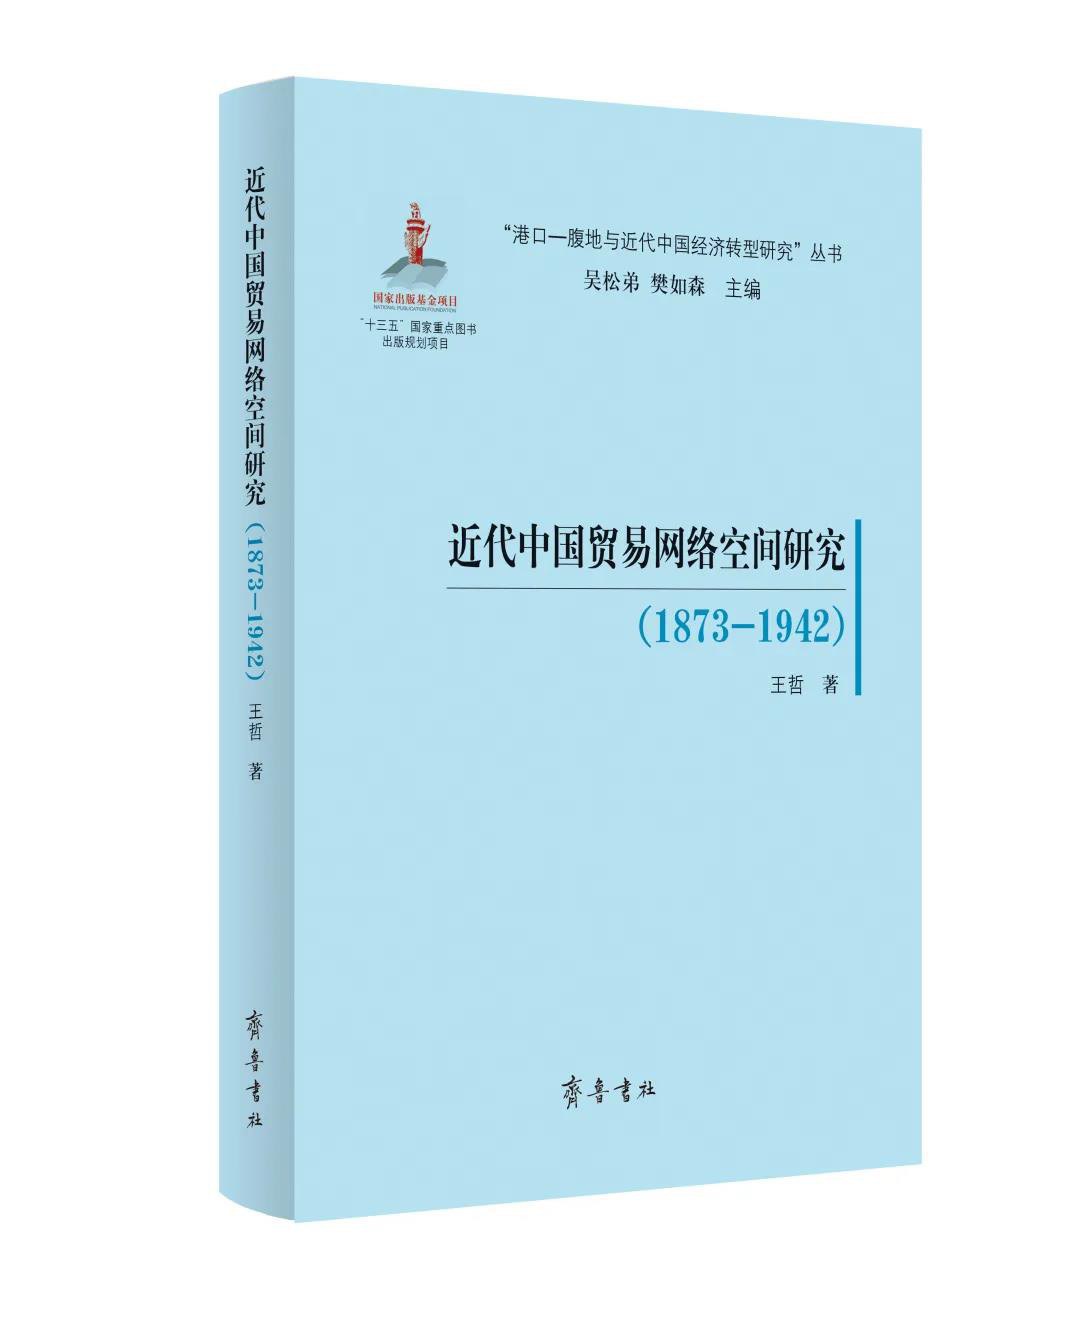 近代中国贸易网络空间研究 1873-1942